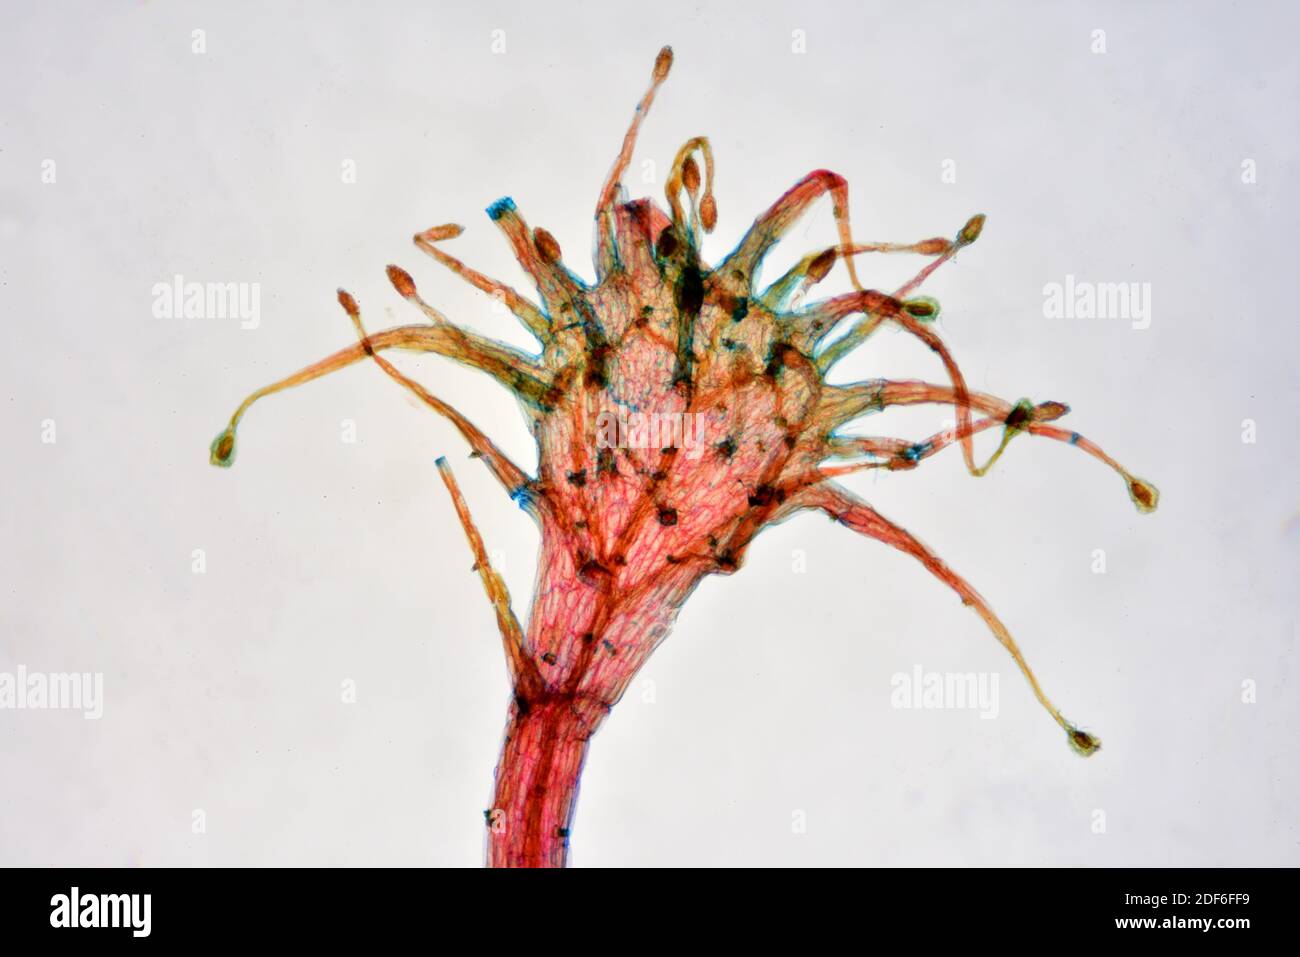 Glandes mucilagineuses à bec ondulé (Drosera sp. ) une plante carnivore. Microscope optique X40. Banque D'Images